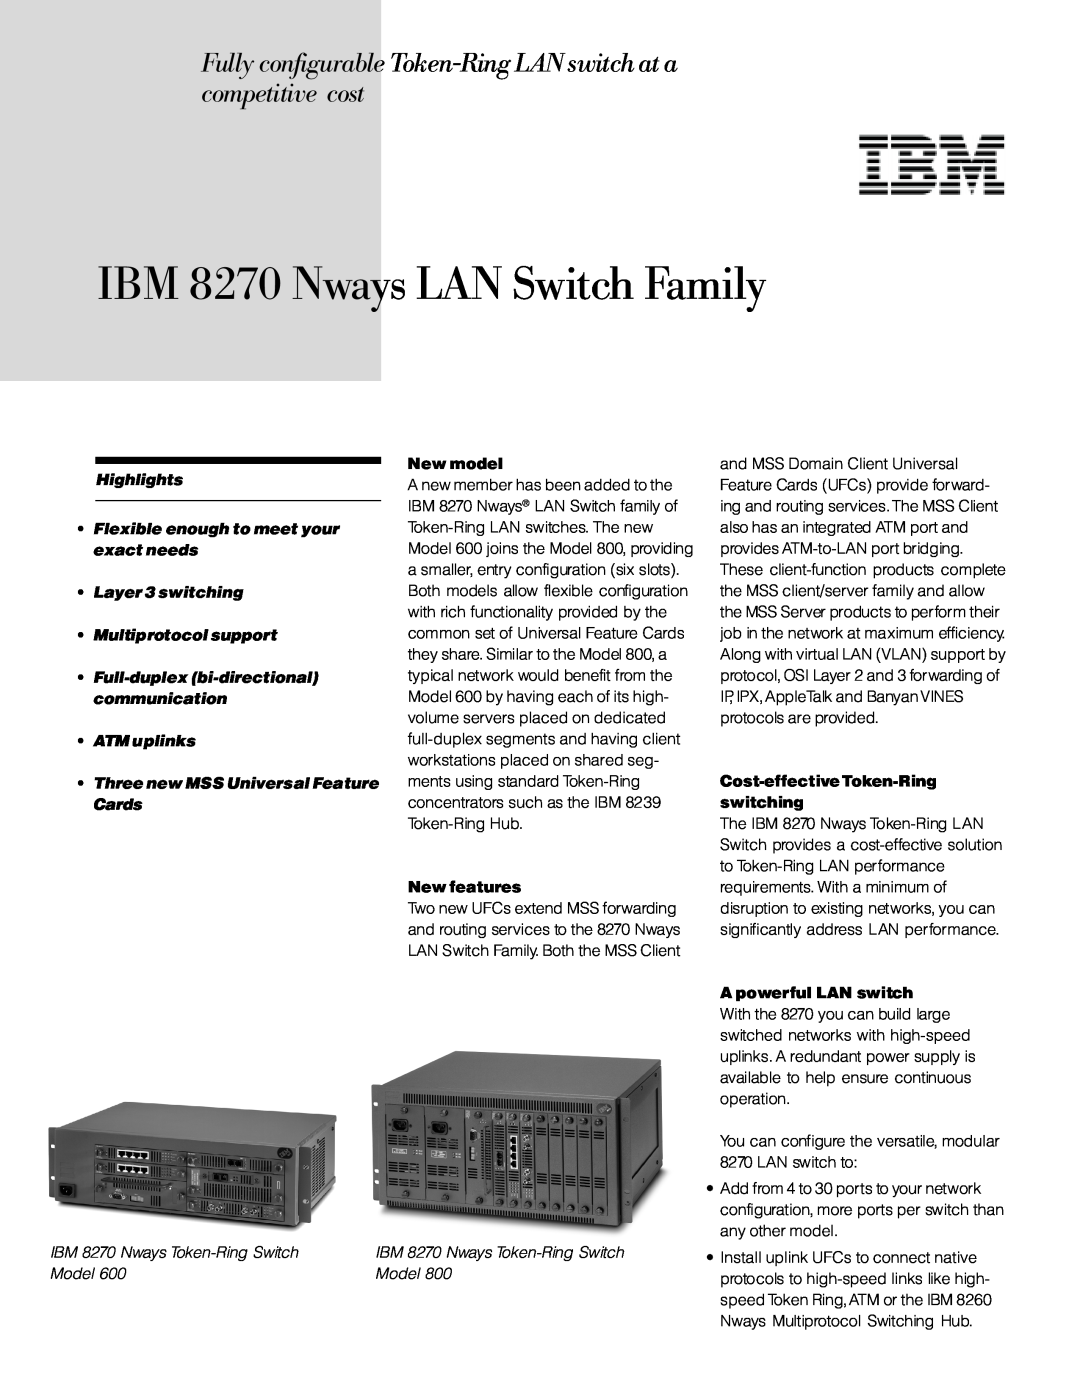 IBM manual IBM 8270 Nways Token-Ring Switch, Model, IBM 8270 Nways LAN Switch Family 